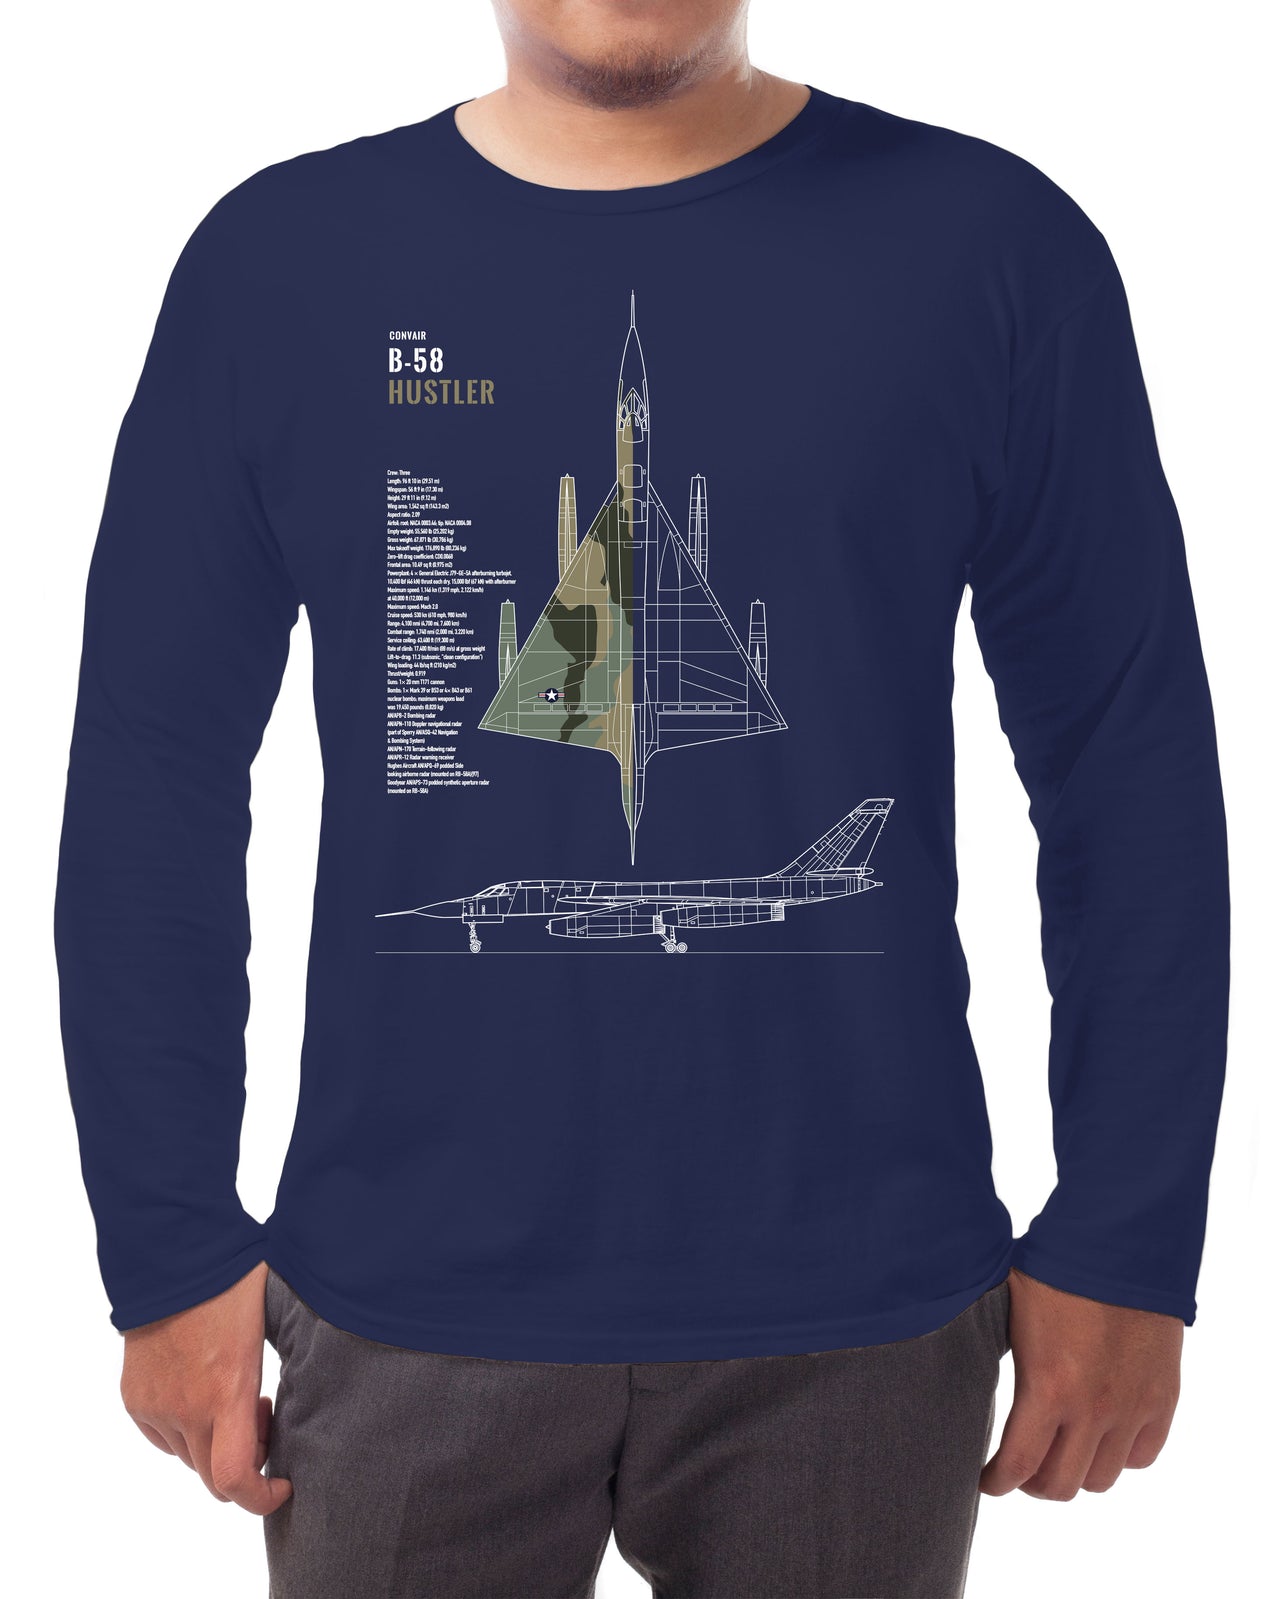 B-58 Hustler - Long-sleeve T-shirt